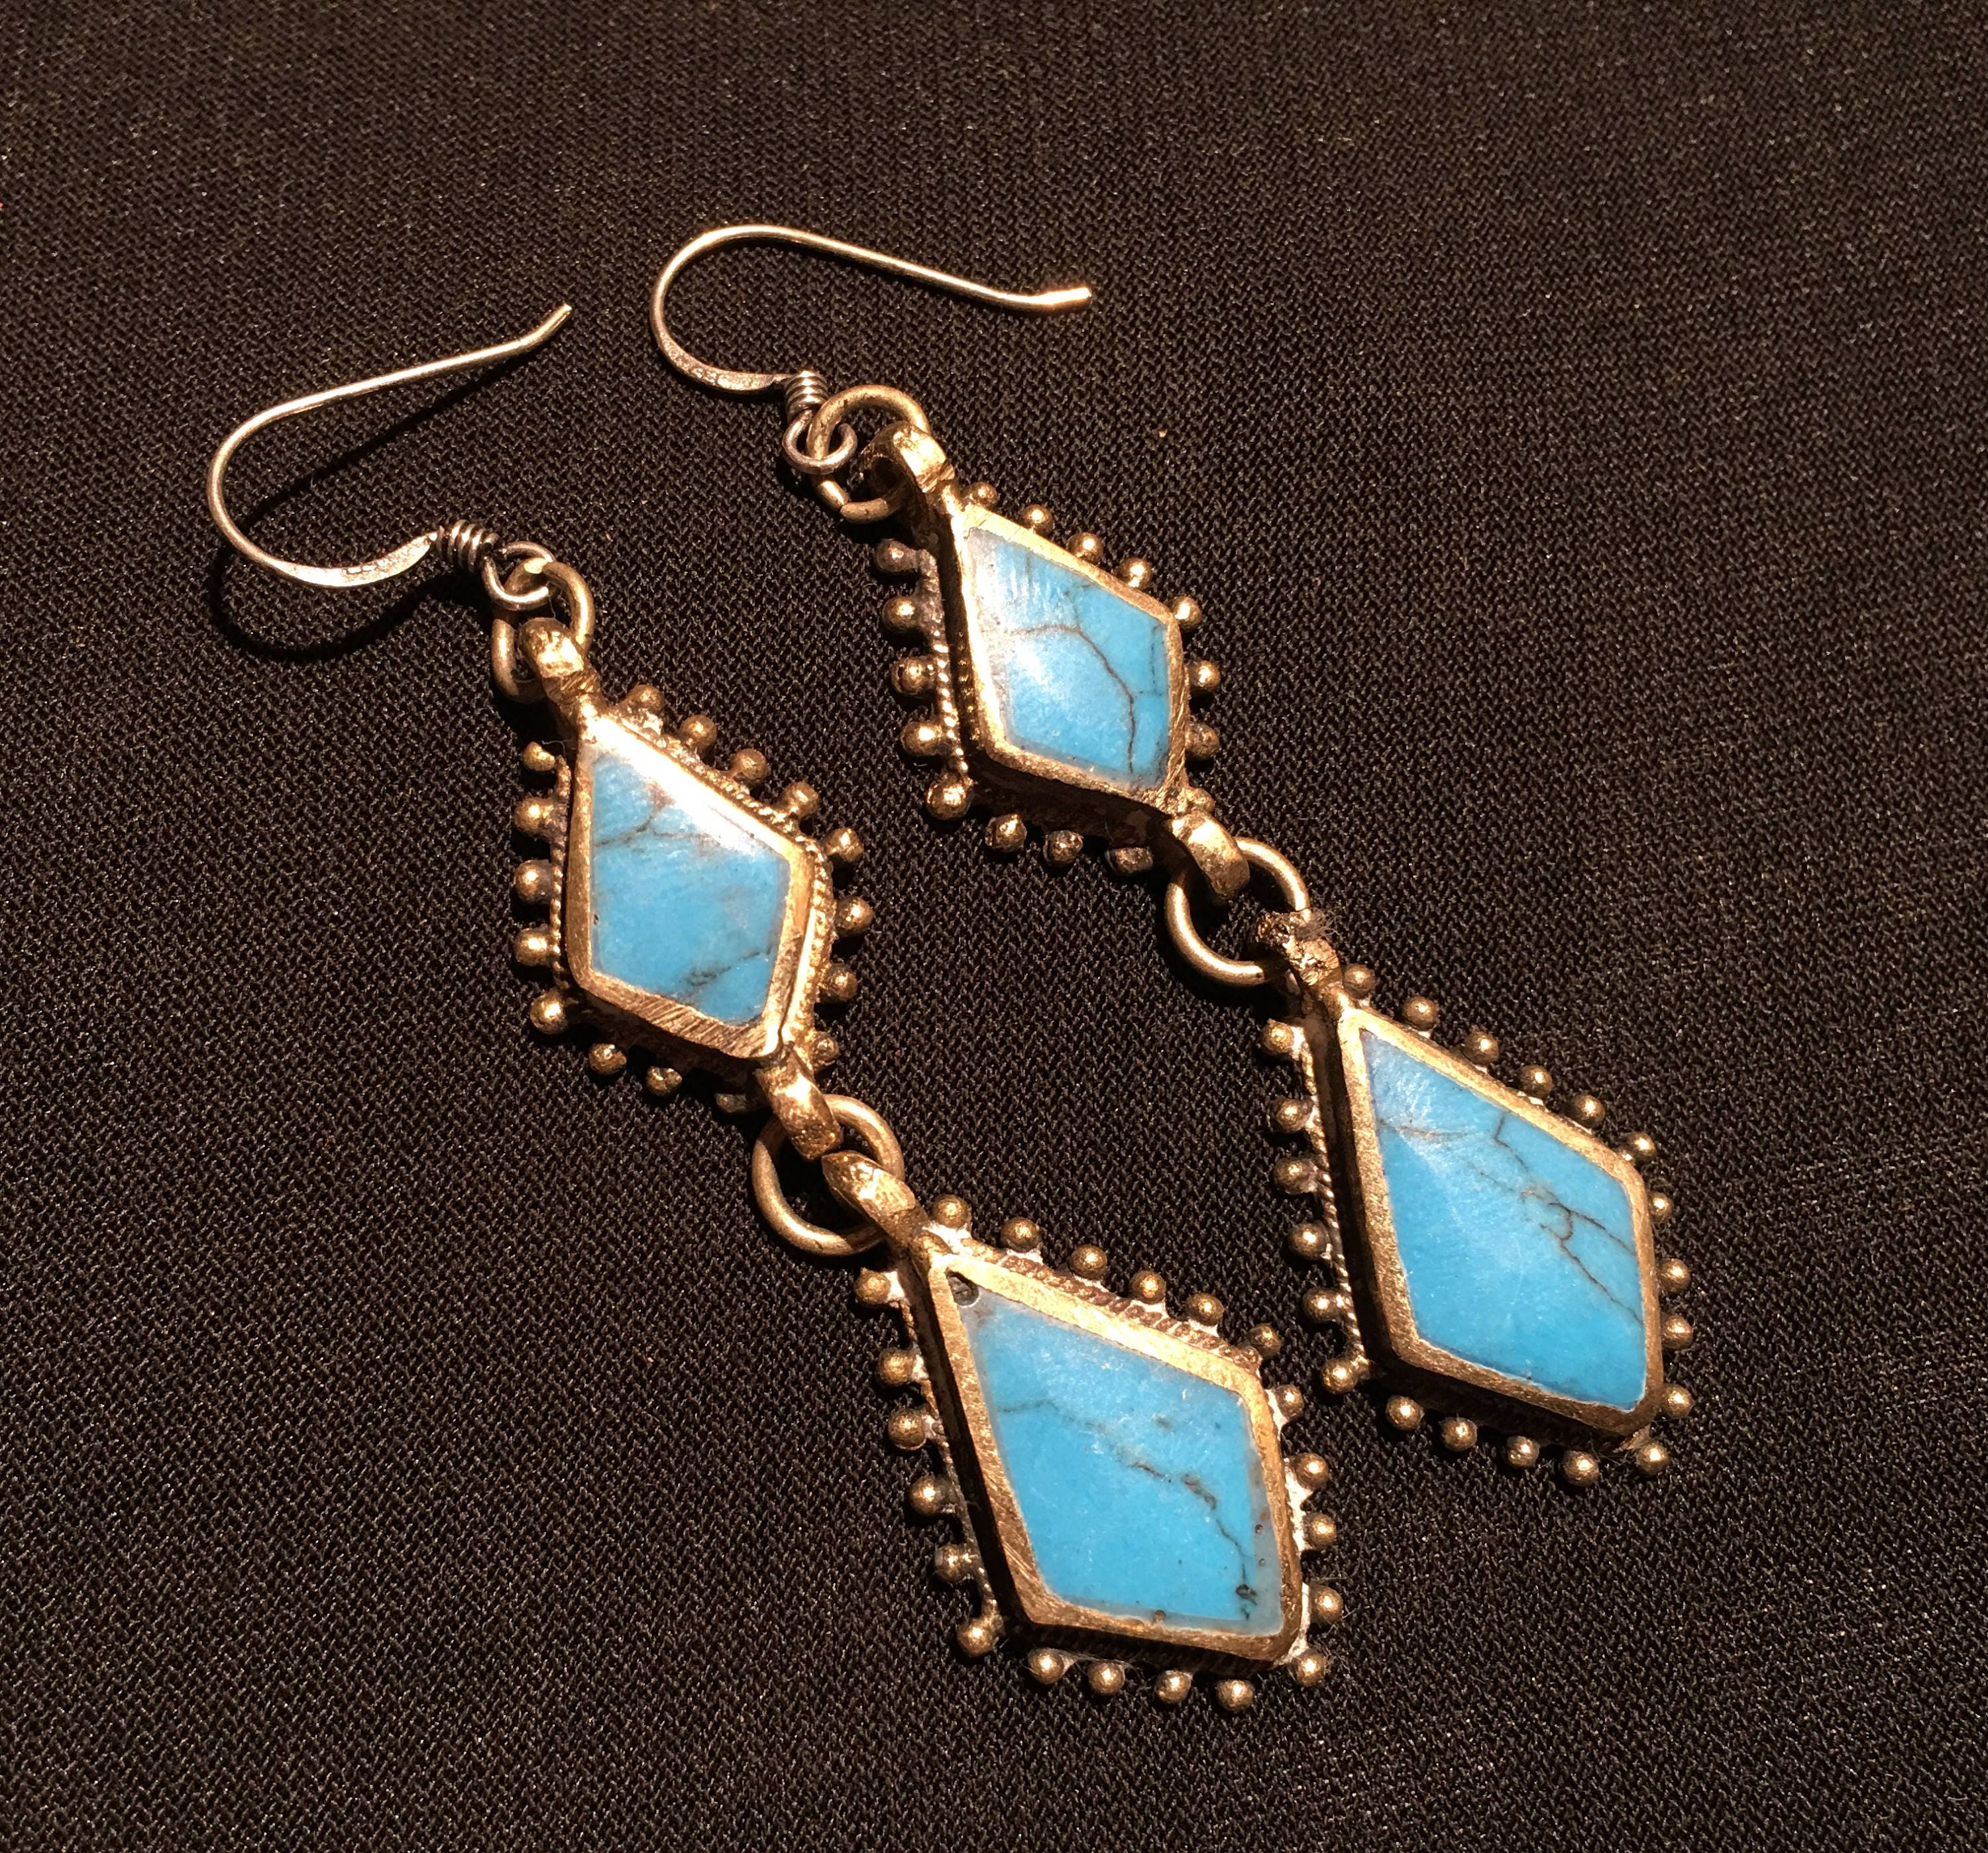 Kochi Jewelry-Vintage Style earringBlue Earring-Ethnic Middle